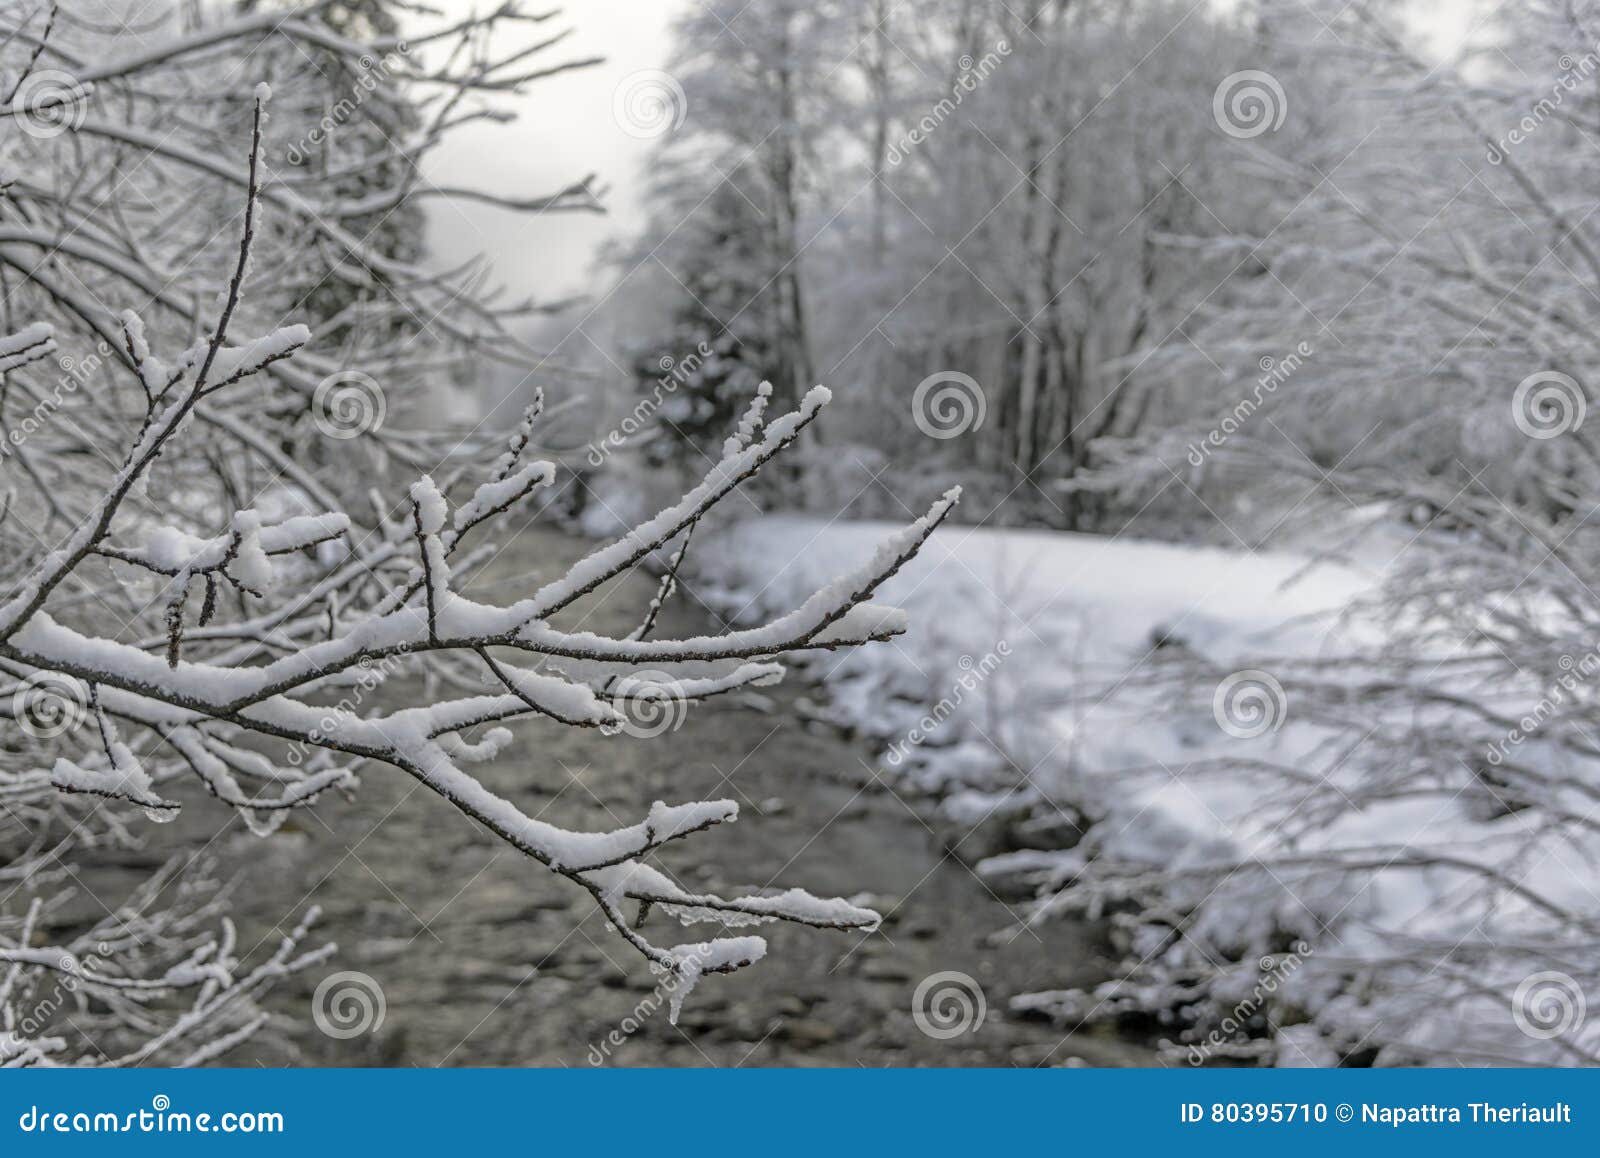 Ландшафт зимы деревянный, белый лес с снегом